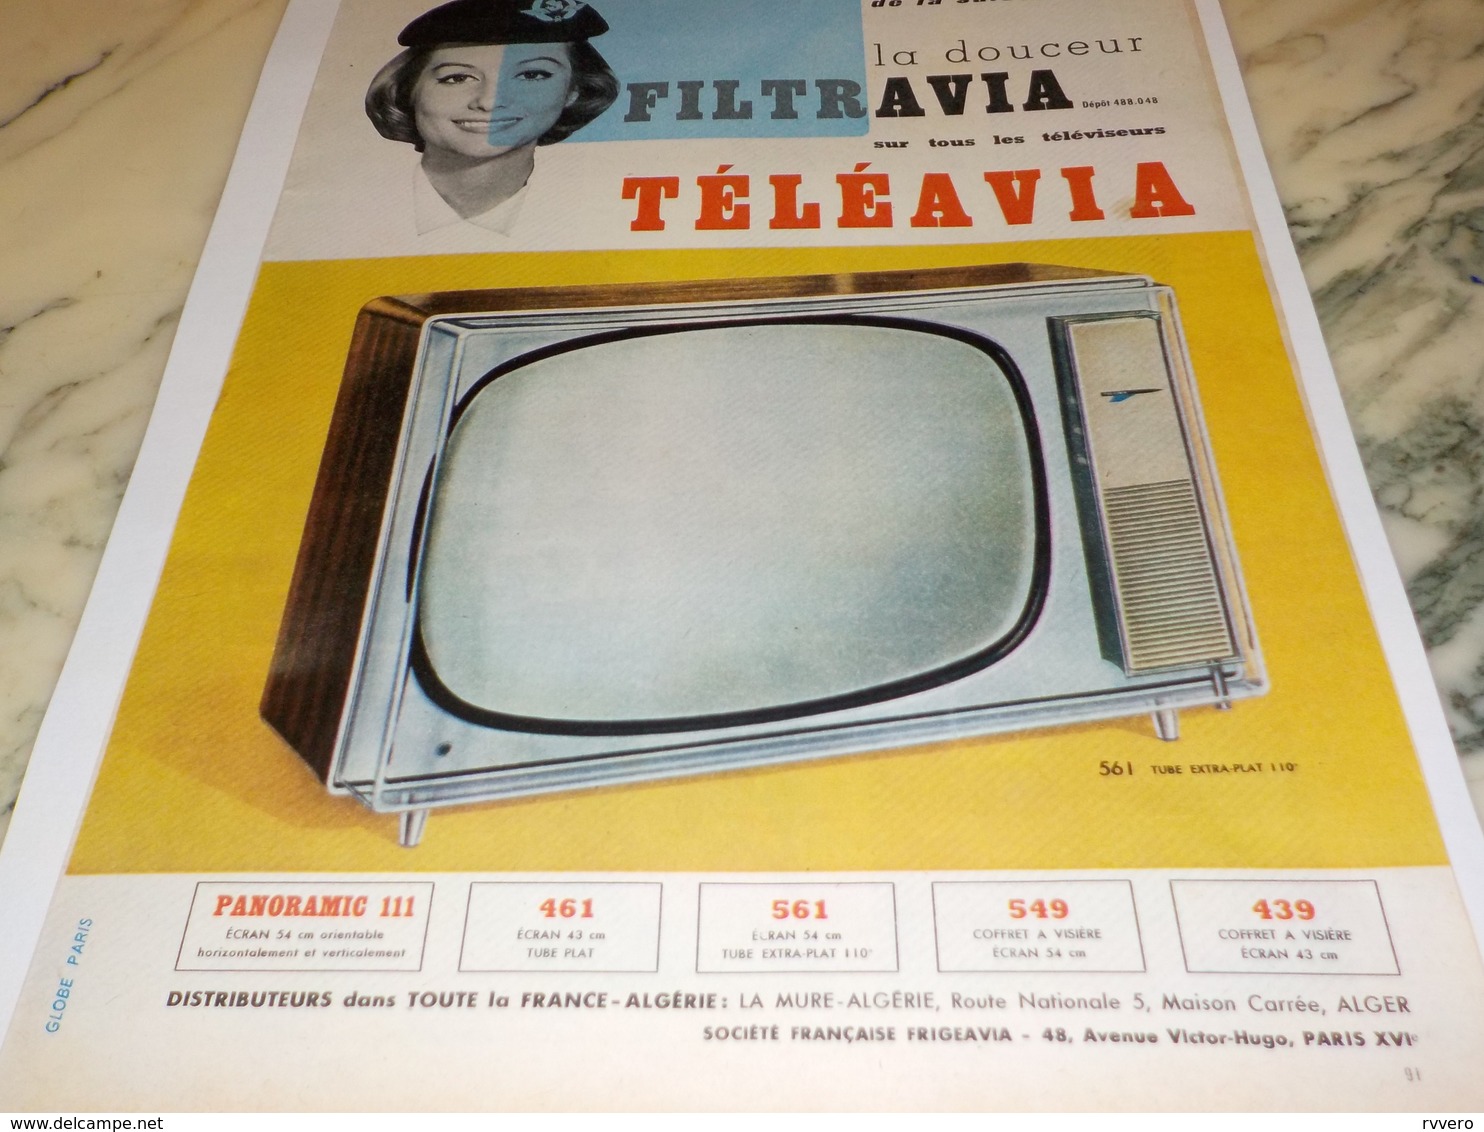 ANCIENNE PUBLICITE TELEVISION TELEAVIA  1960 - Television